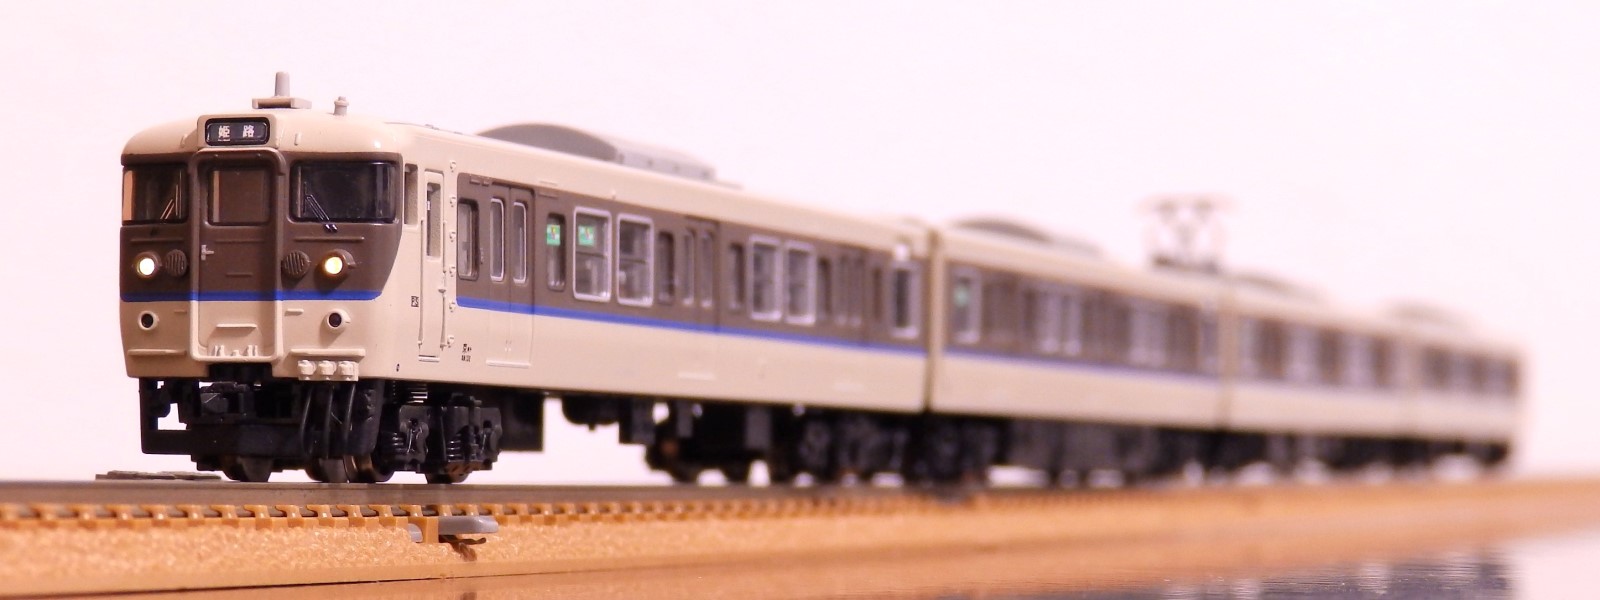 Jr神戸線の113系引退から15年 はーくの鉄道日記